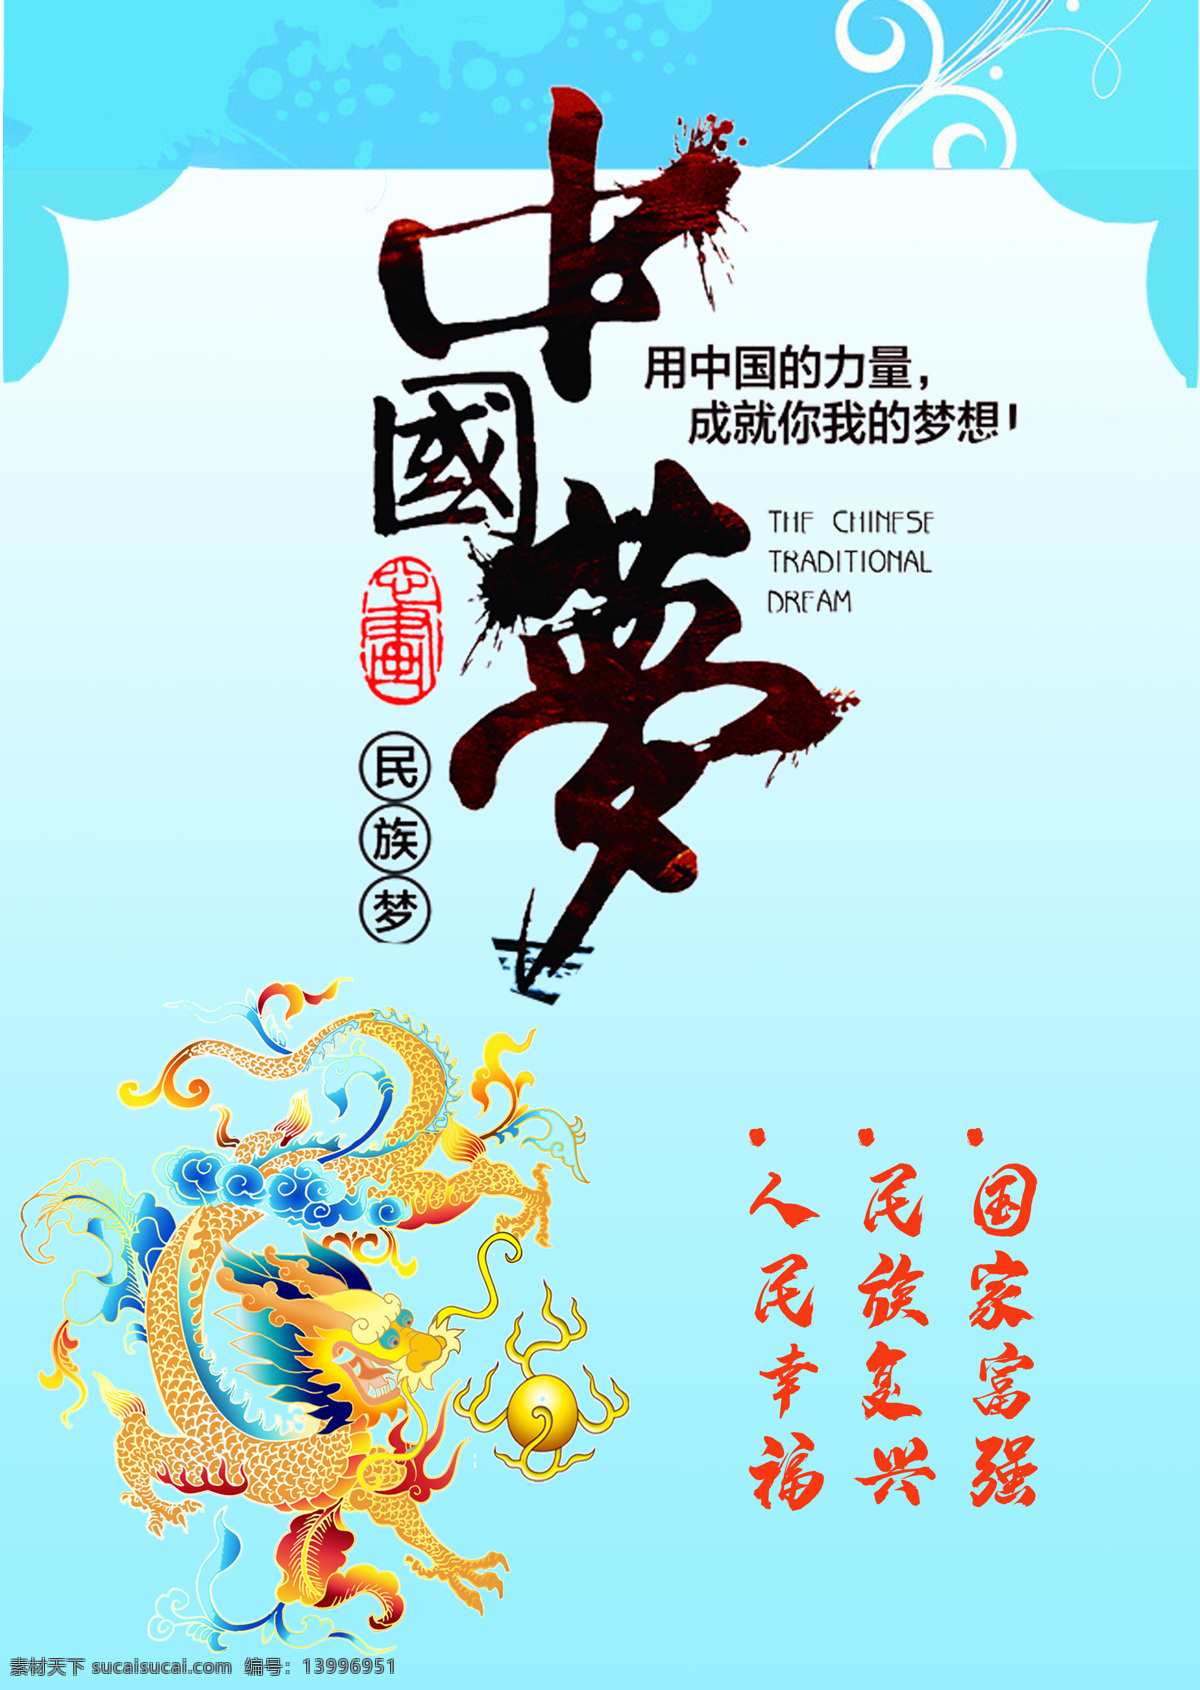 中国梦 民族梦 国家富强 民族复兴 民族幸福 文化艺术 传统文化